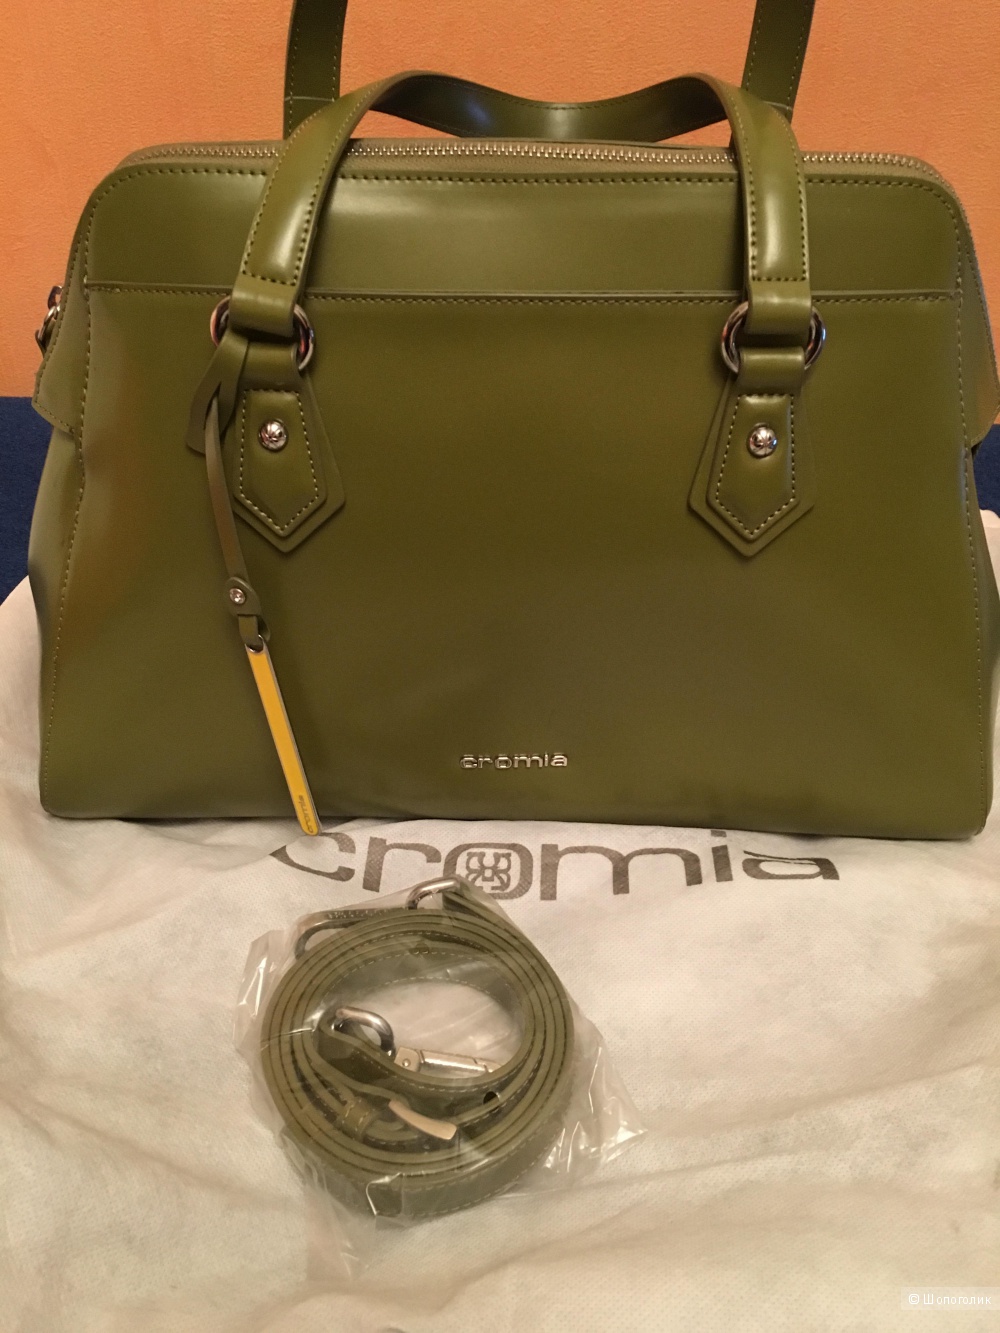 Cromia сумка